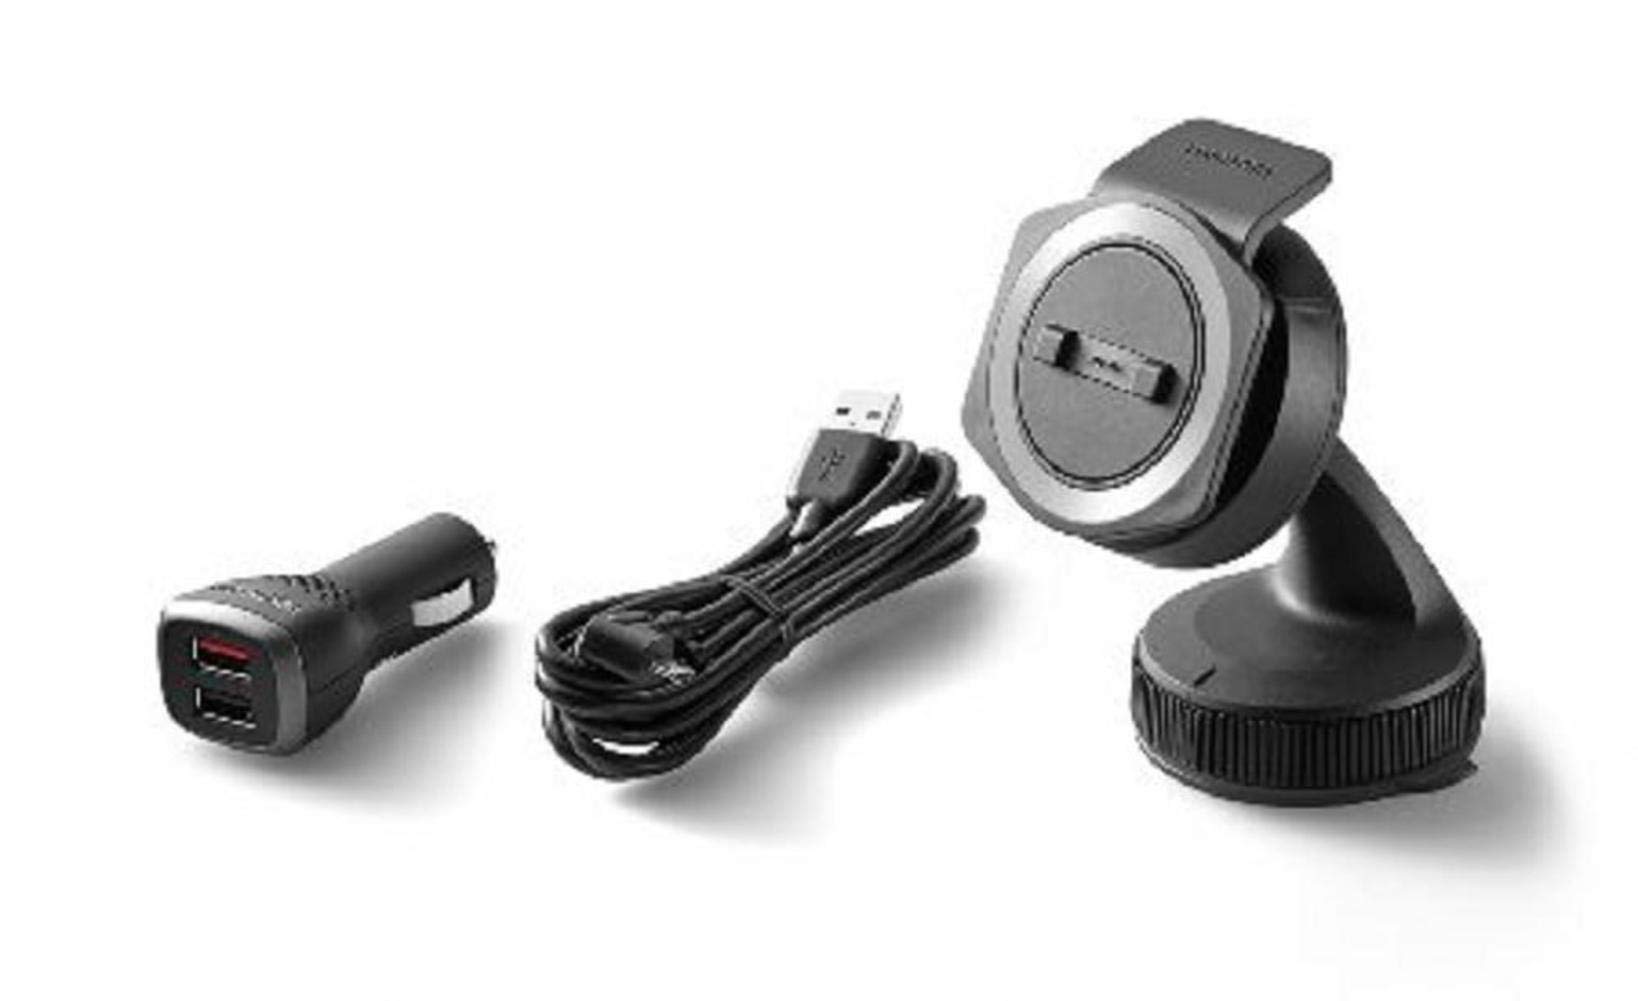 TomTom Rider Autohalterung für alle TomTom Rider Modelle inklusive USB Auto-Schnellladegerät und Kabel (siehe Kompatibilitätsliste unten)